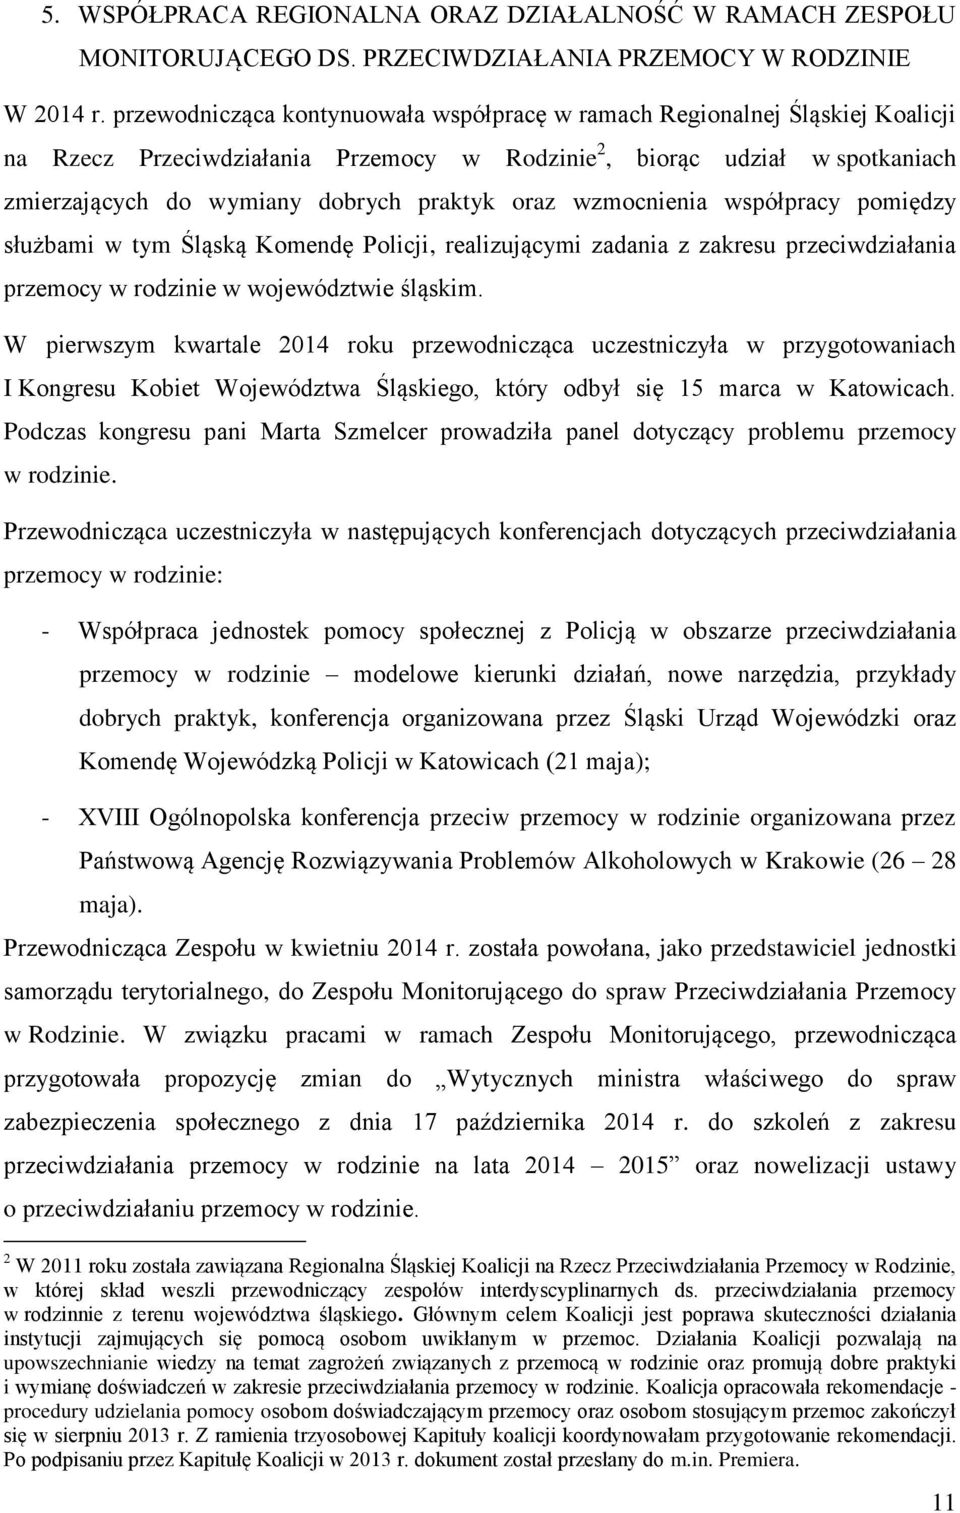 oraz wzmocnienia współpracy pomiędzy służbami w tym Śląską Komendę Policji, realizującymi zadania z zakresu przeciwdziałania przemocy w rodzinie w województwie śląskim.